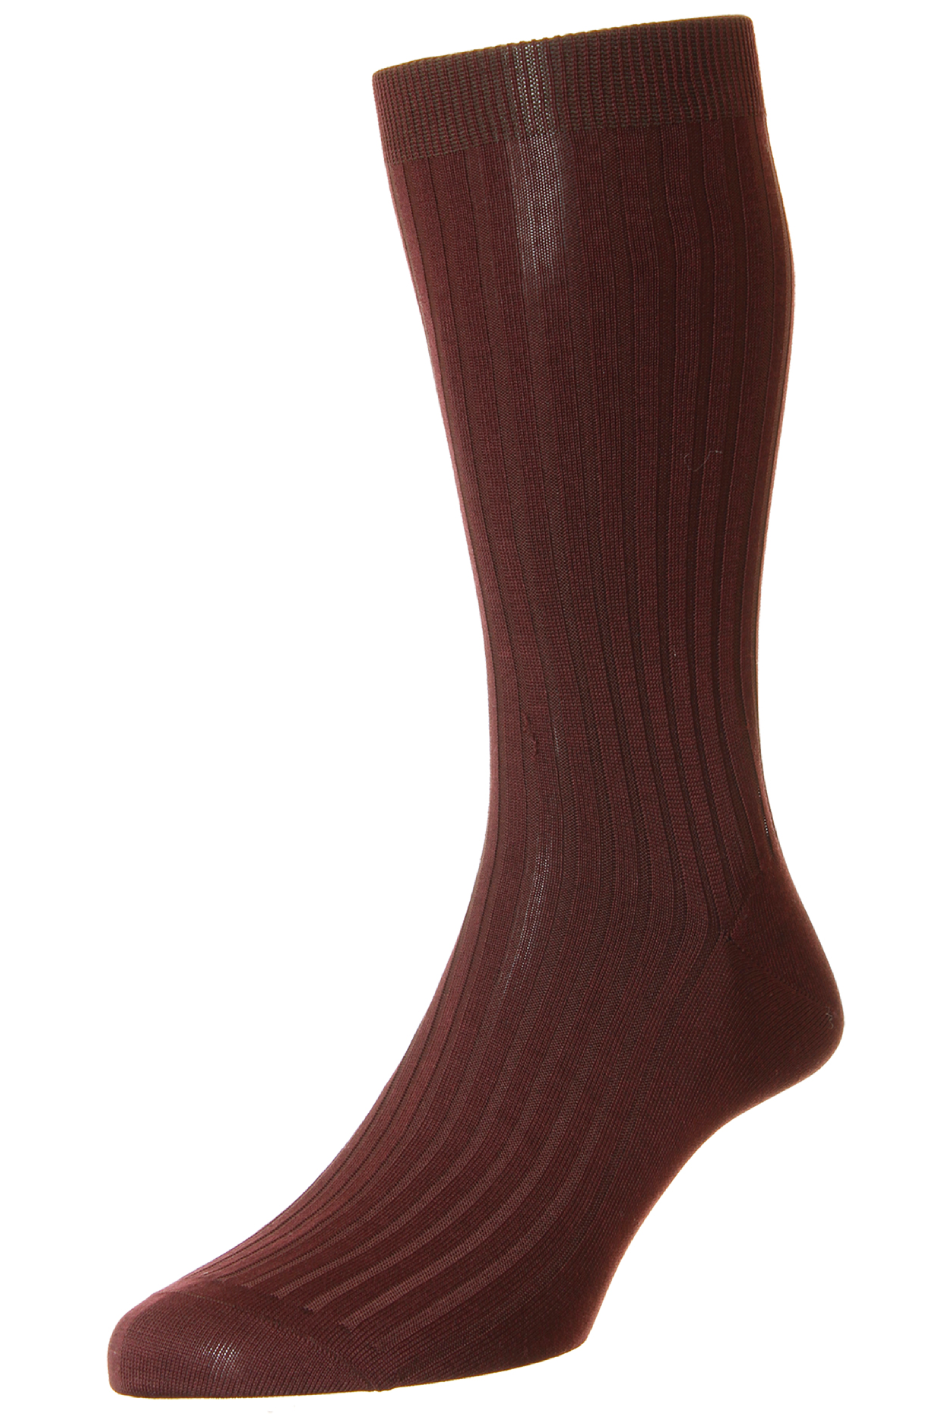 Pantherella Men's Danvers Rib Sock